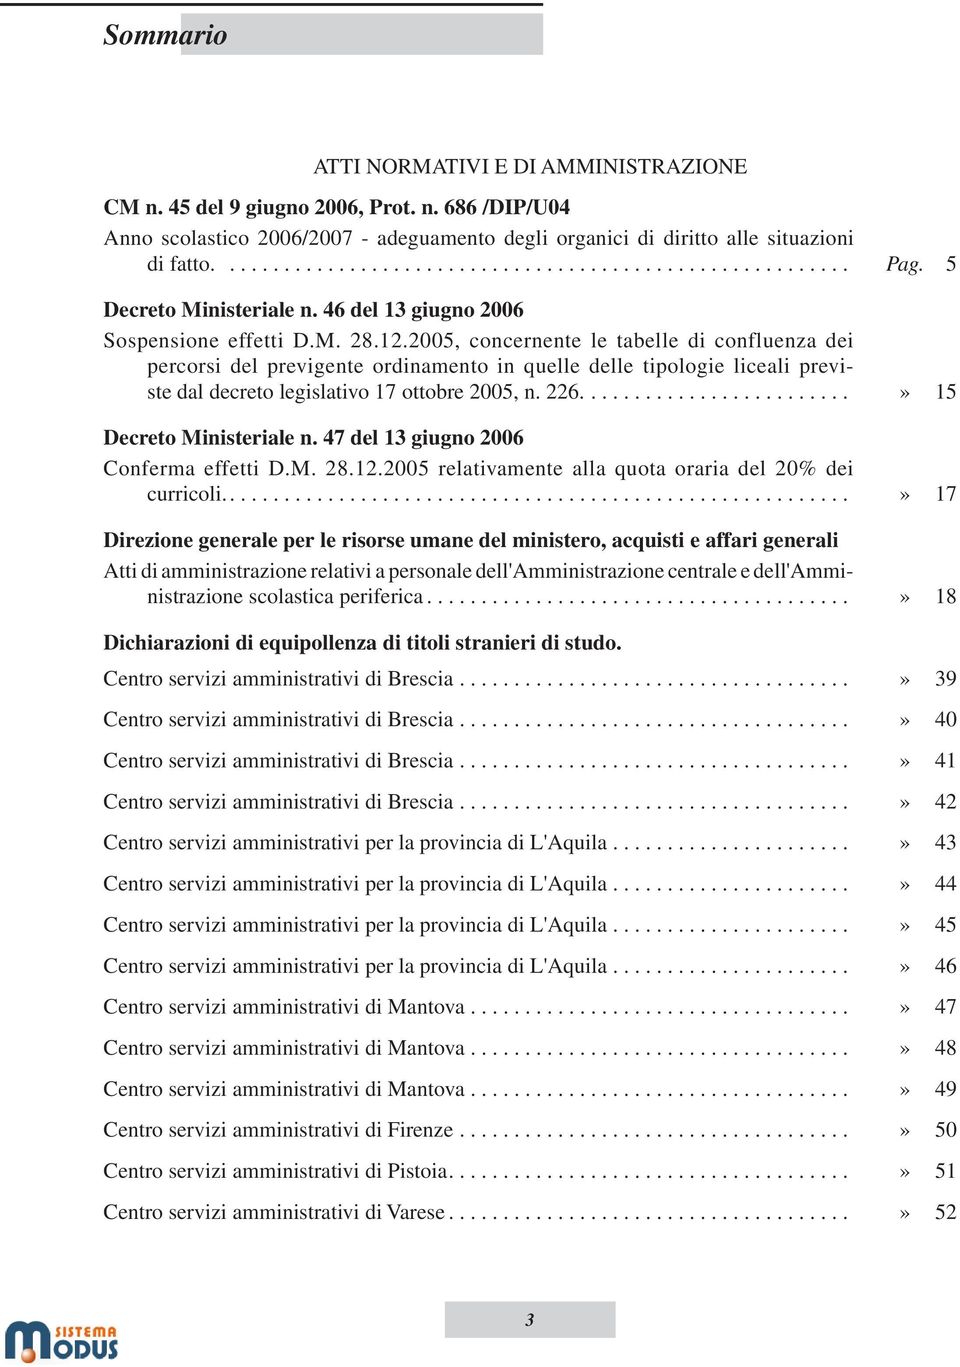 2005, concernente le tabelle di confluenza dei percorsi del previgente ordinamento in quelle delle tipologie liceali previste dal decreto legislativo 17 ottobre 2005, n. 226.